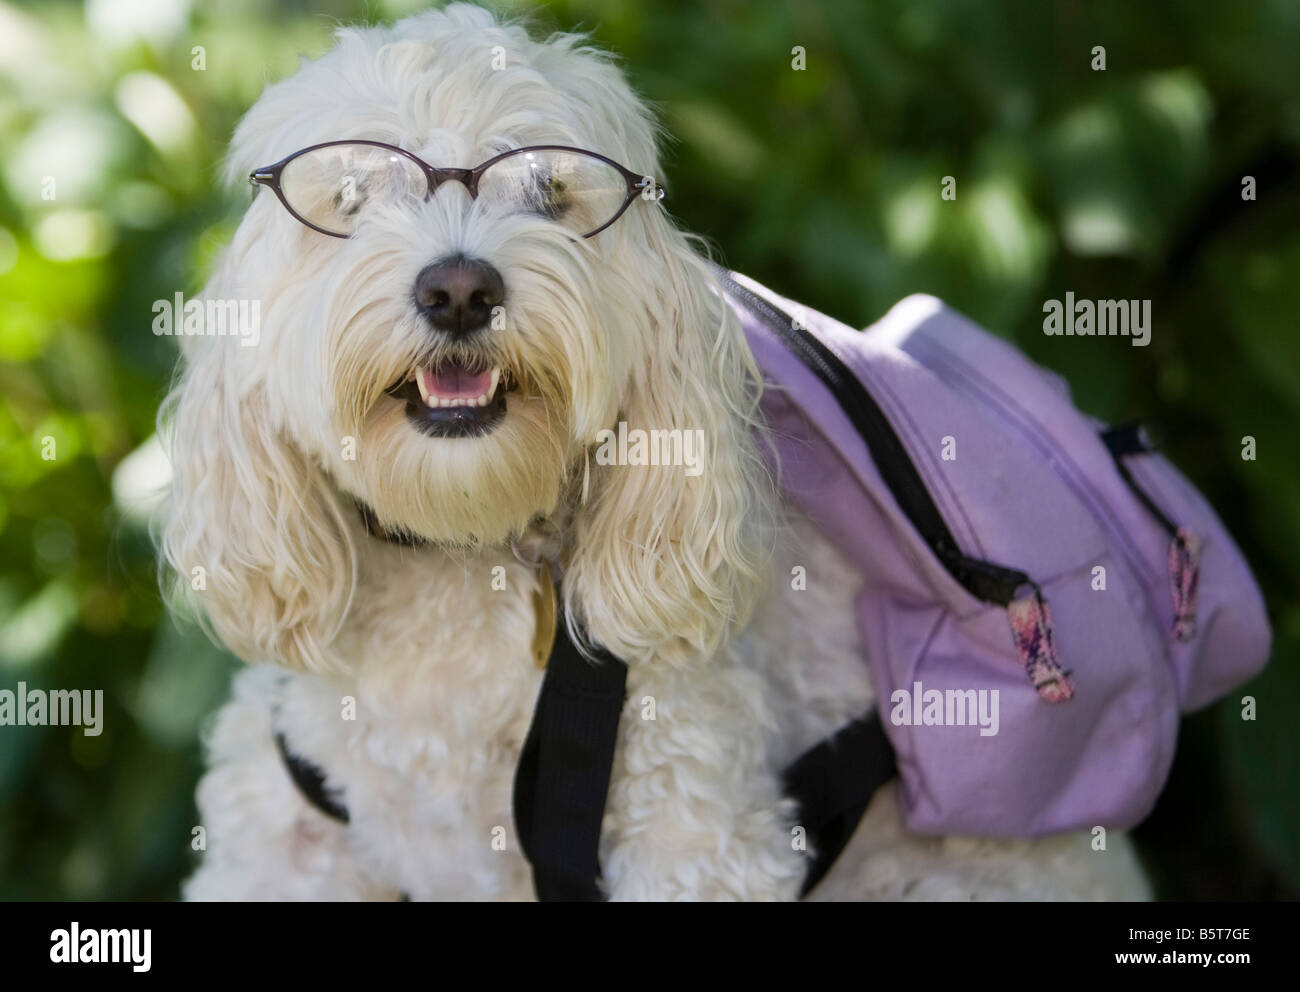 Hund trägt Brille und einem Rucksack Stockfotografie - Alamy